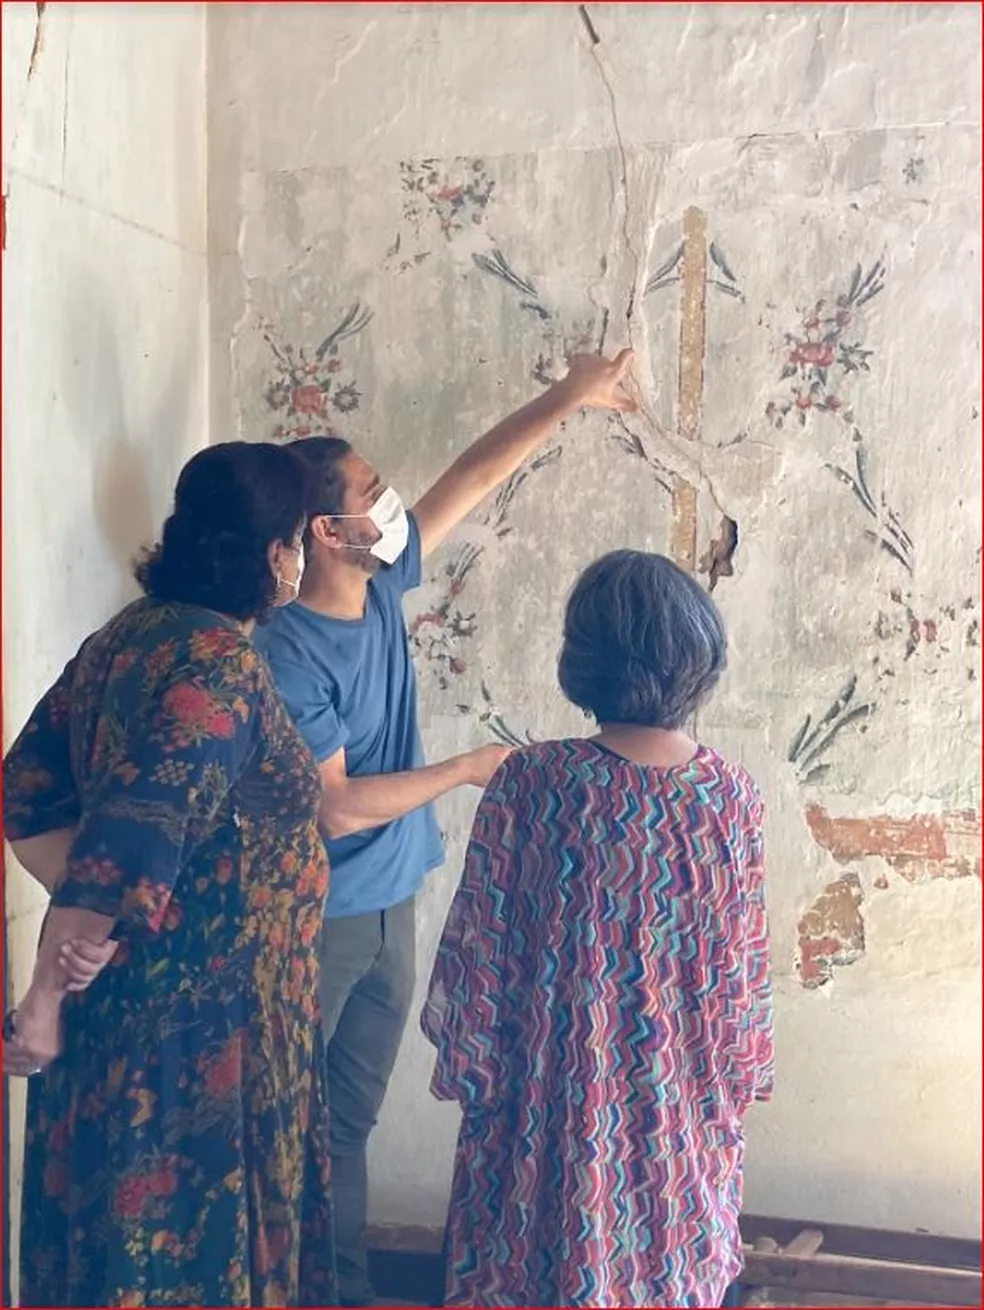 Pinturas coloniais foram redescobertas no Museu Casa Padre Toledo, em Tiradentes